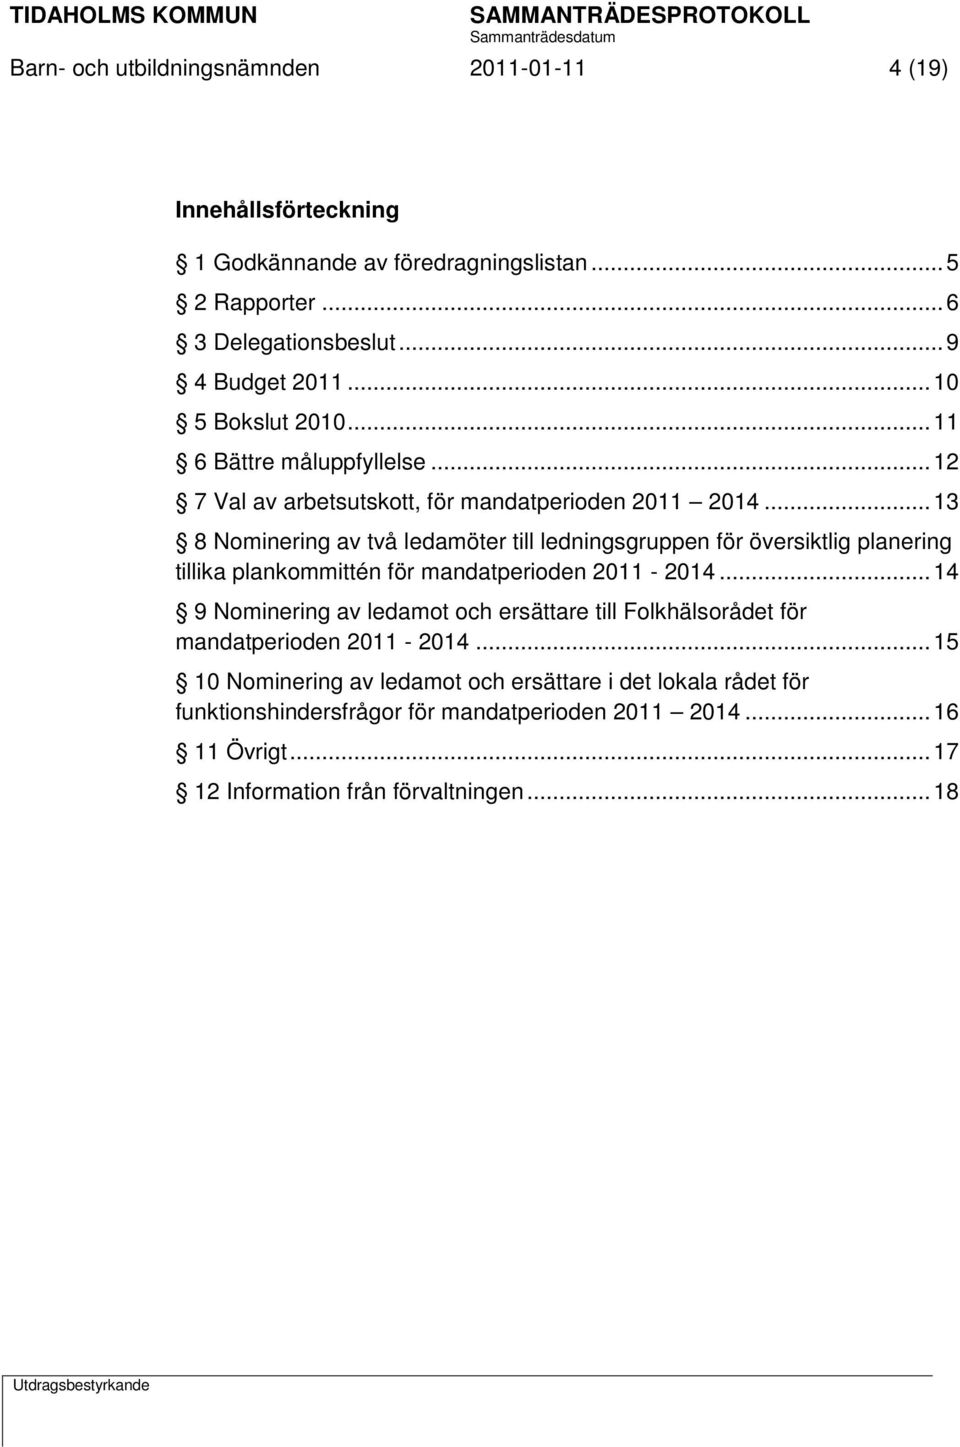 .. 13 8 Nominering av två ledamöter till ledningsgruppen för översiktlig planering tillika plankommittén för mandatperioden 2011-2014.